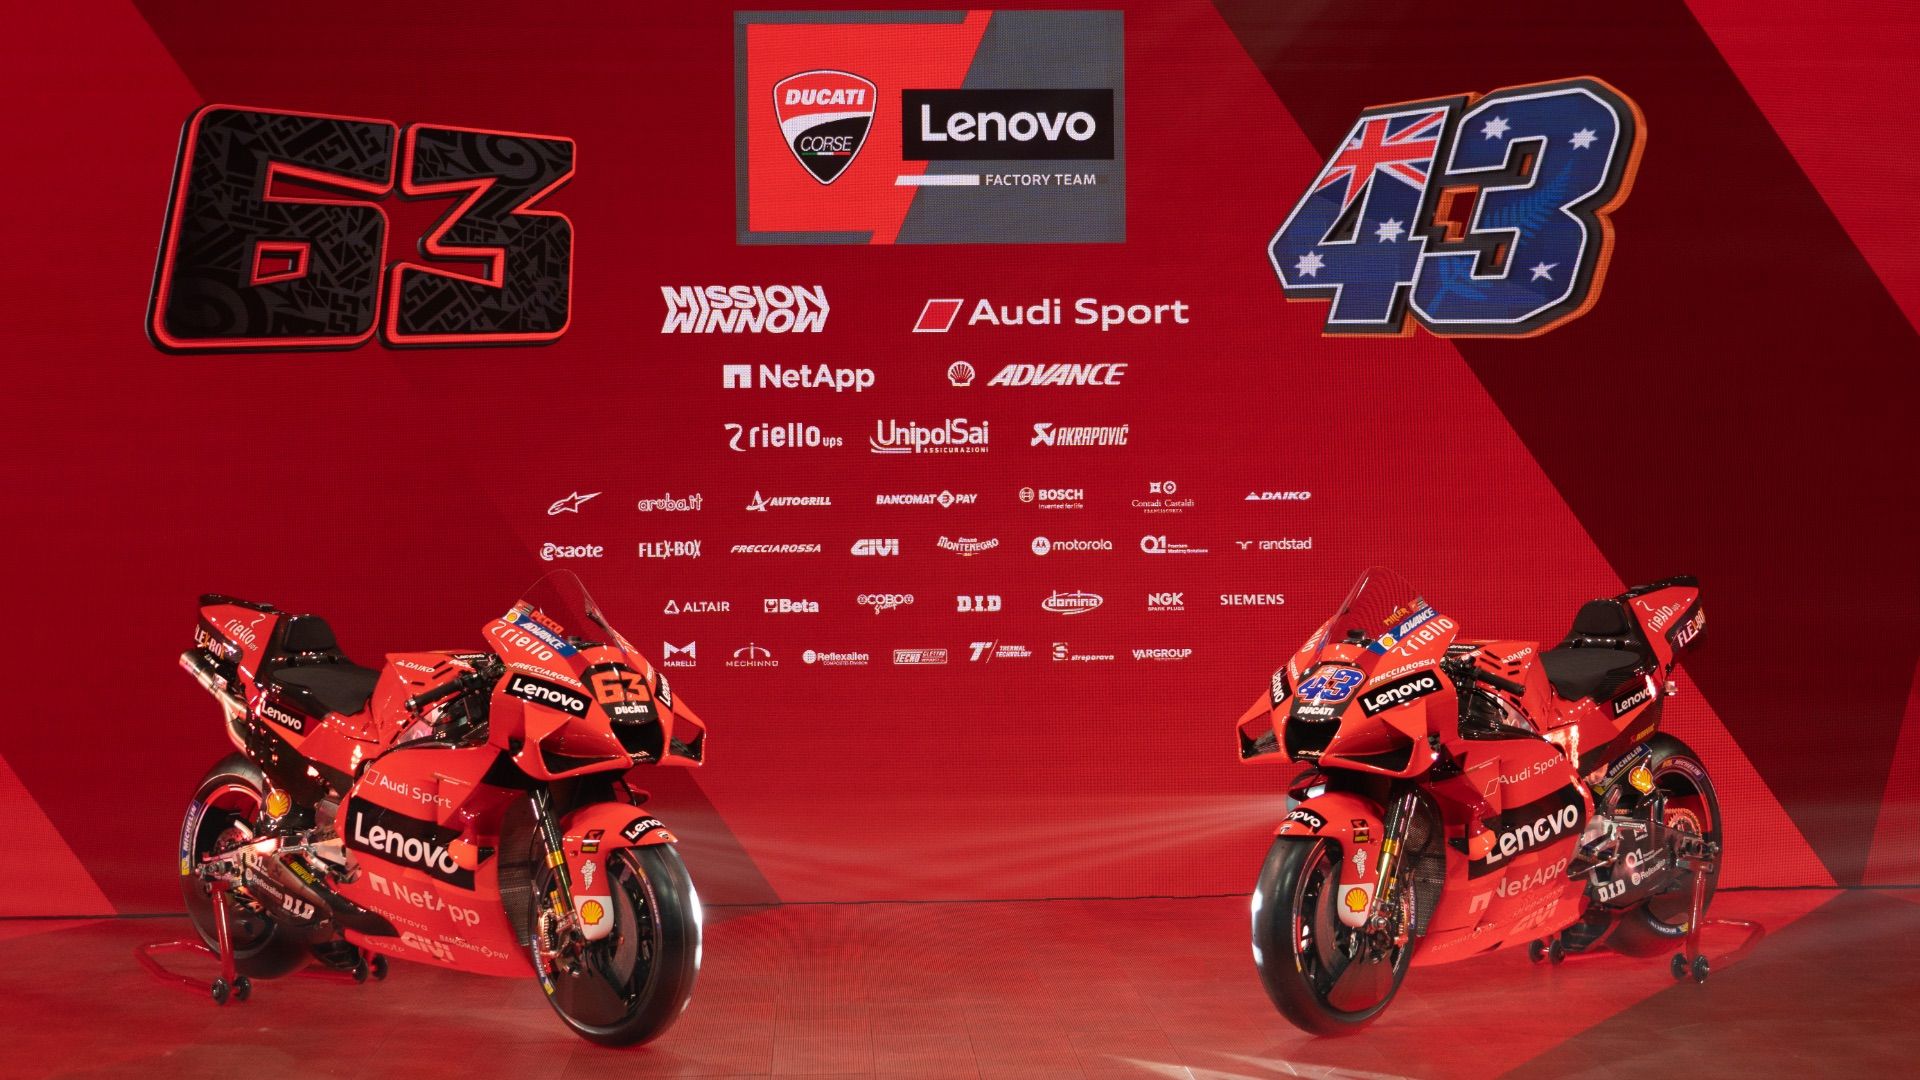 The 2021 Ducati Lenovo Team Presented Online. Motor Valley • Il Sito Della Terra Dei Motori Dell'Emilia Romagna